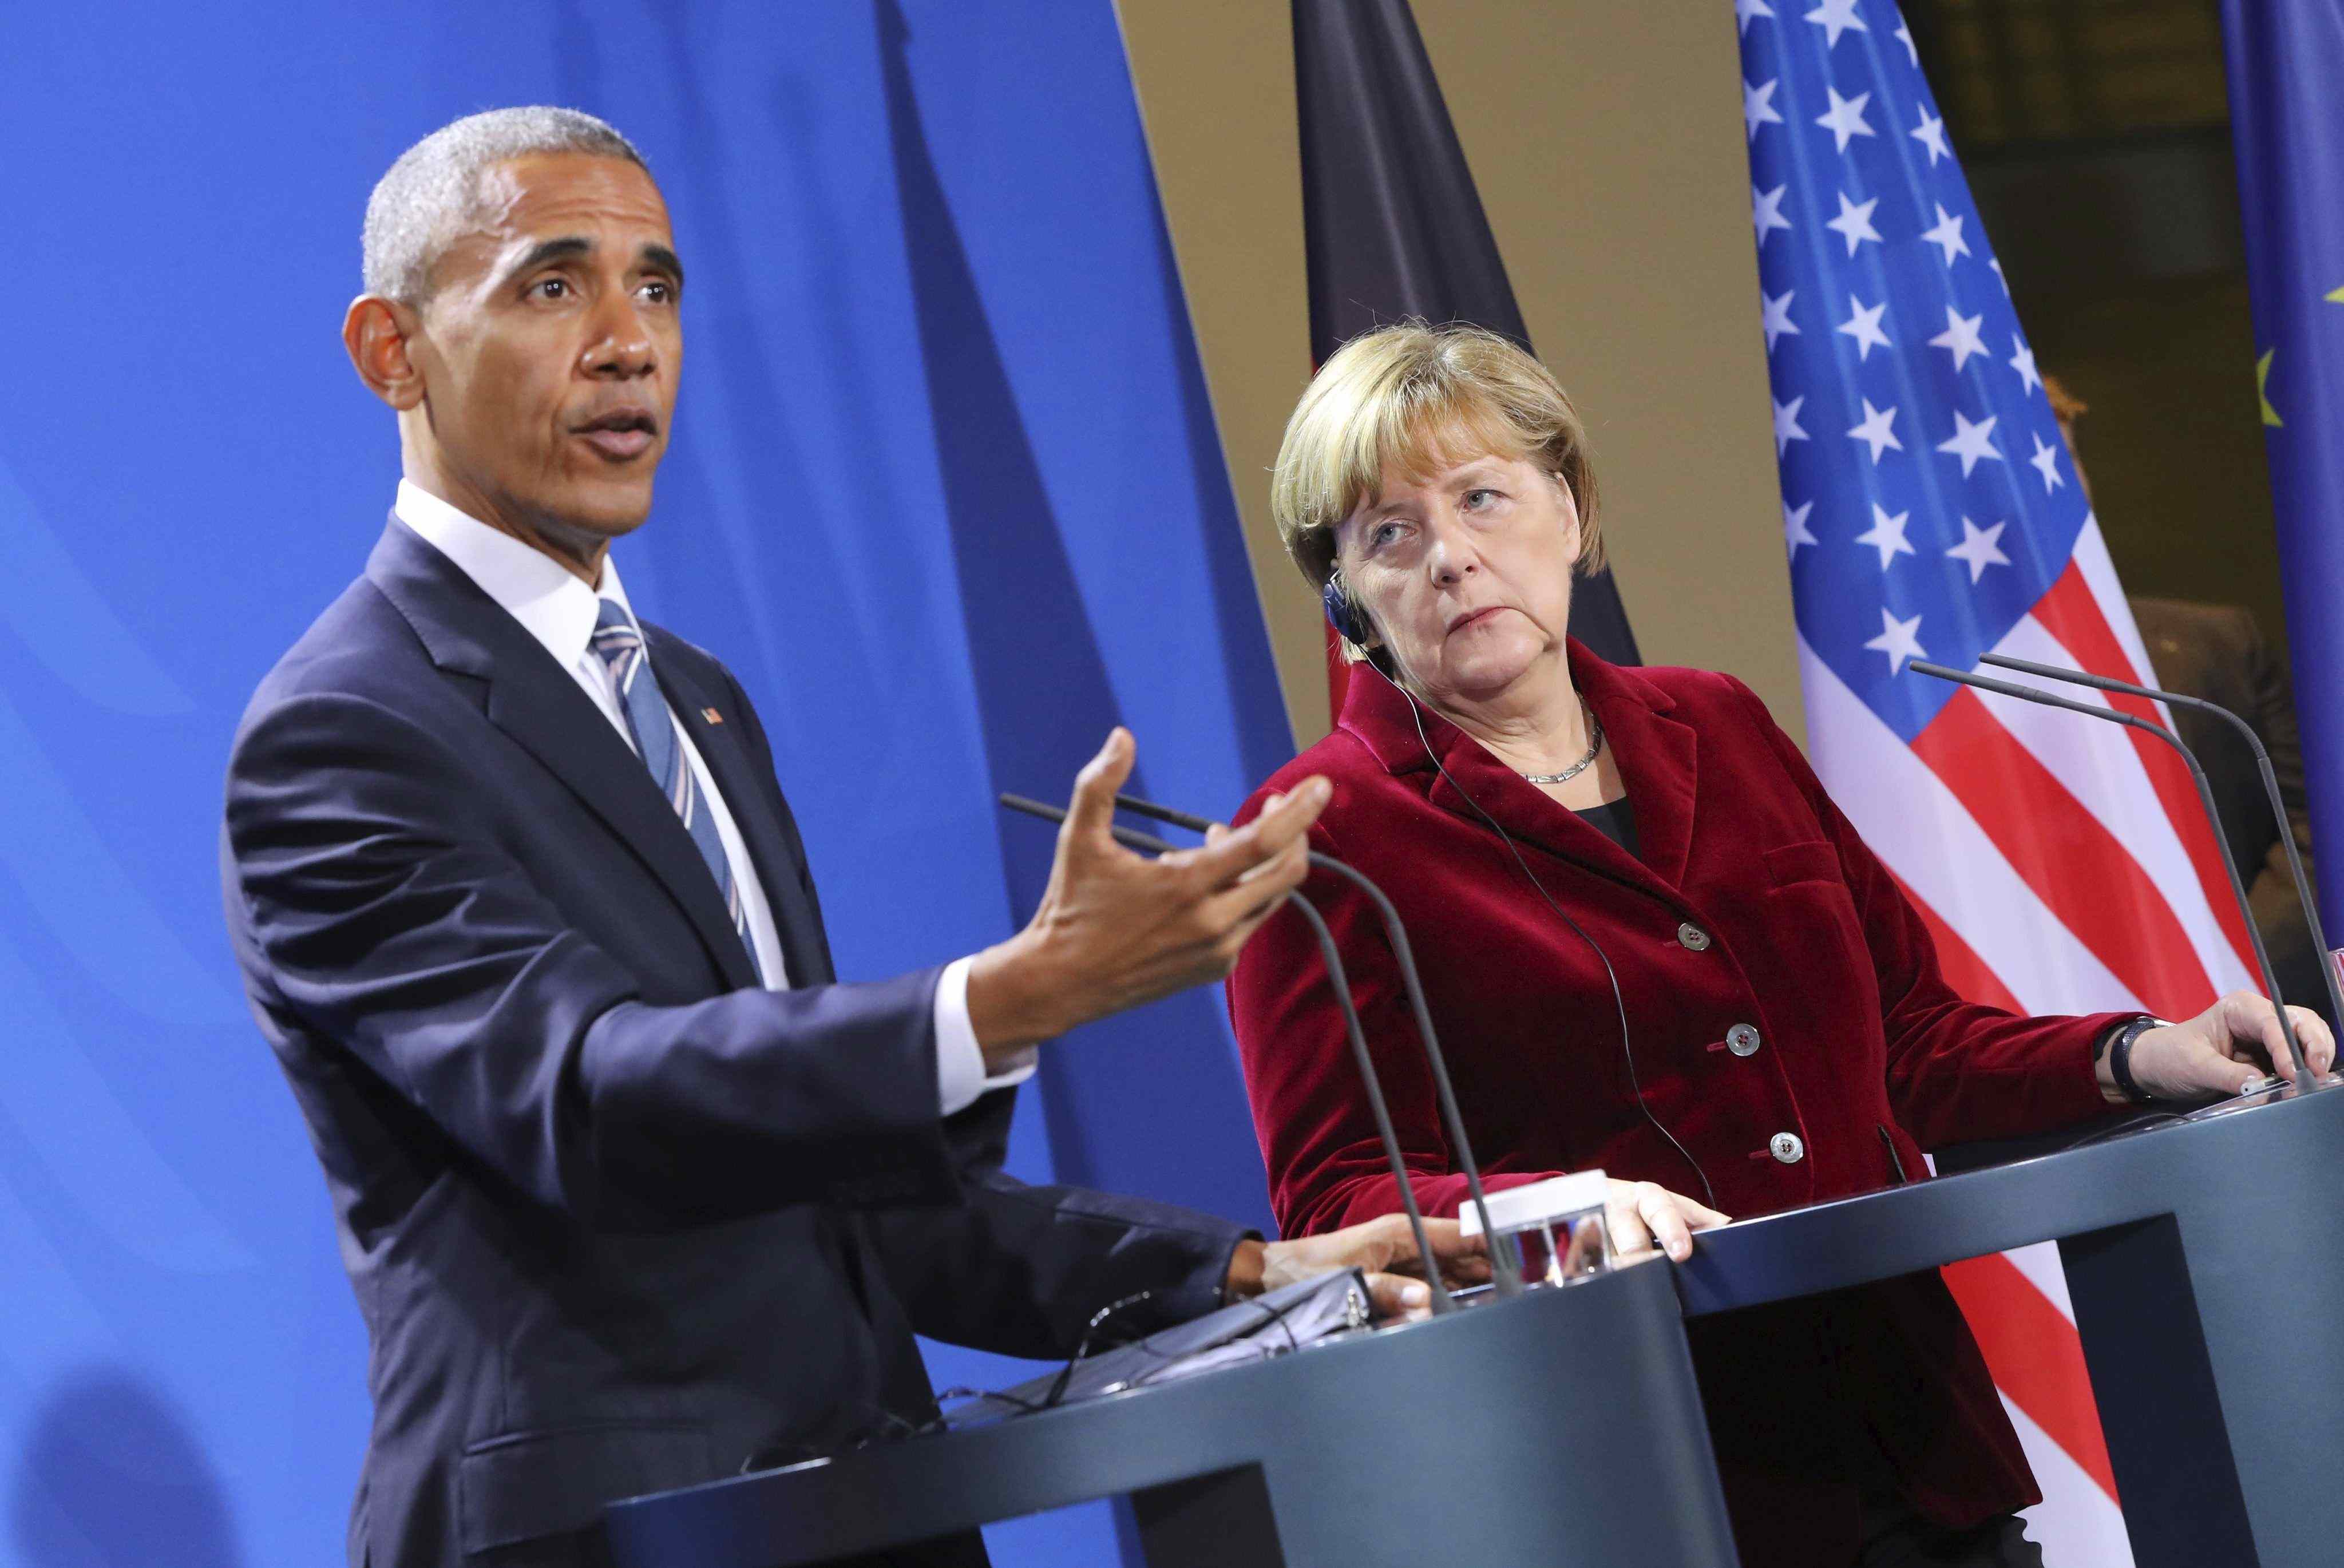 Obama i Merkel emplacen Trump a mantenir les aliances i els valors comuns